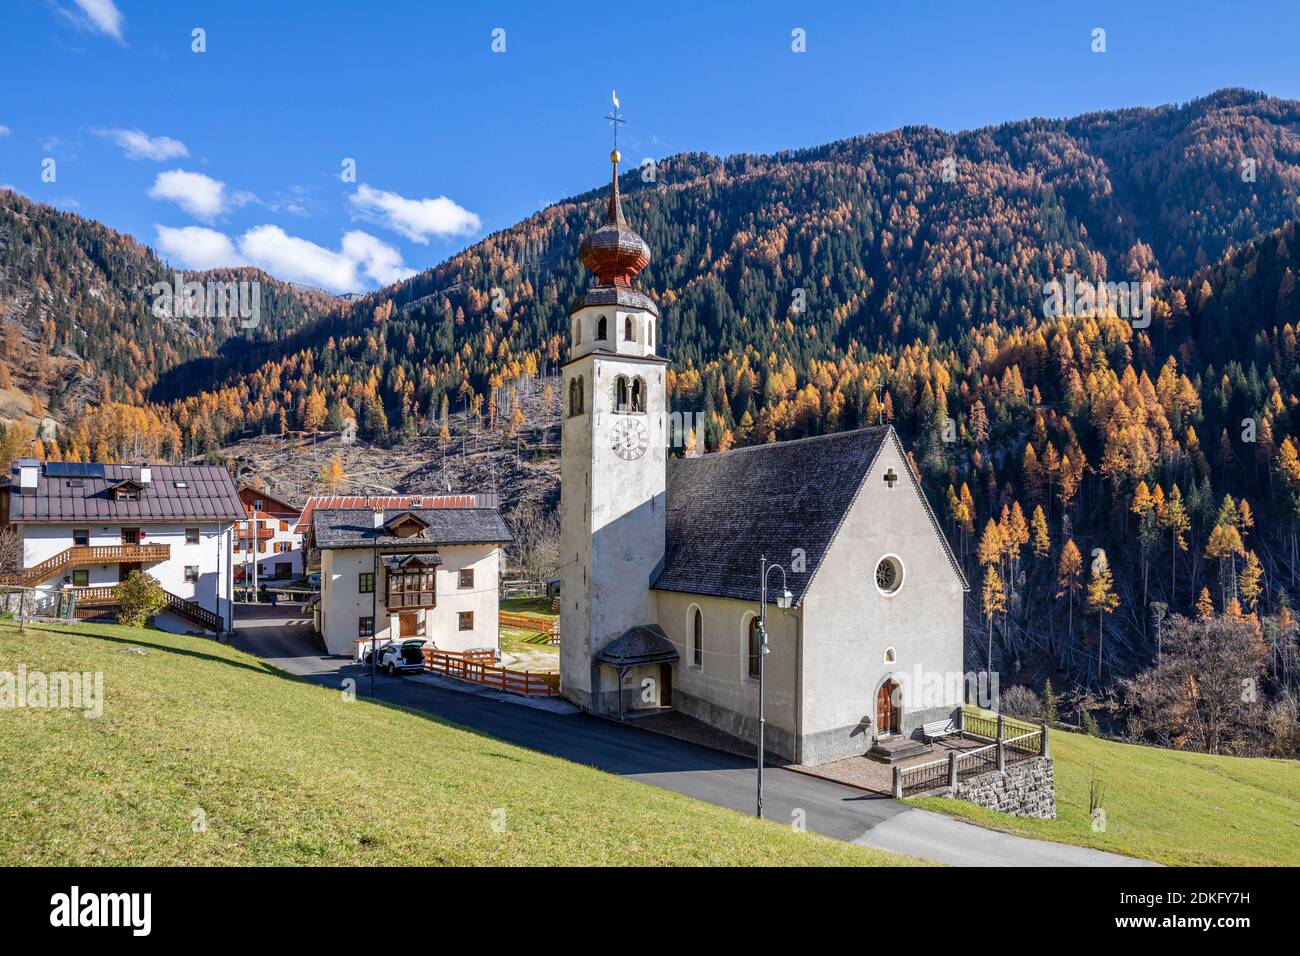 the small village of Andraz with the church, municipality of Livinallongo del Col di Lana, Belluno, Veneto, Italy Stock Photo